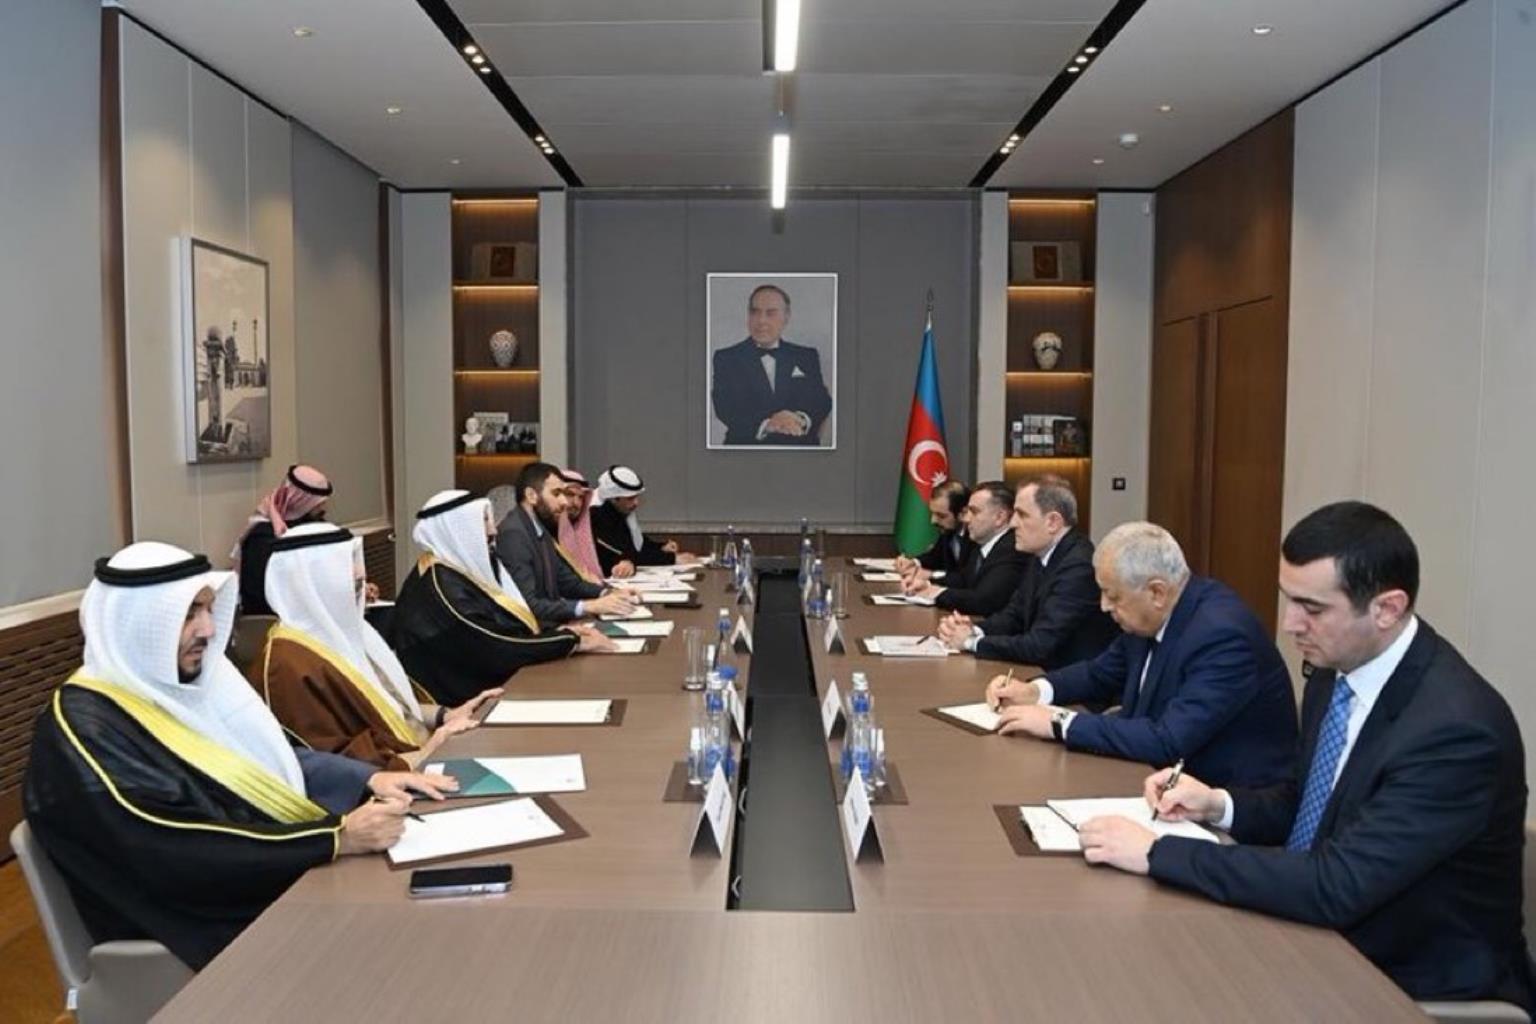 وفد الصداقة البرلمانية (الكويتية - الأذربيجانية) يلتقي وزير خارجية أذربيجان